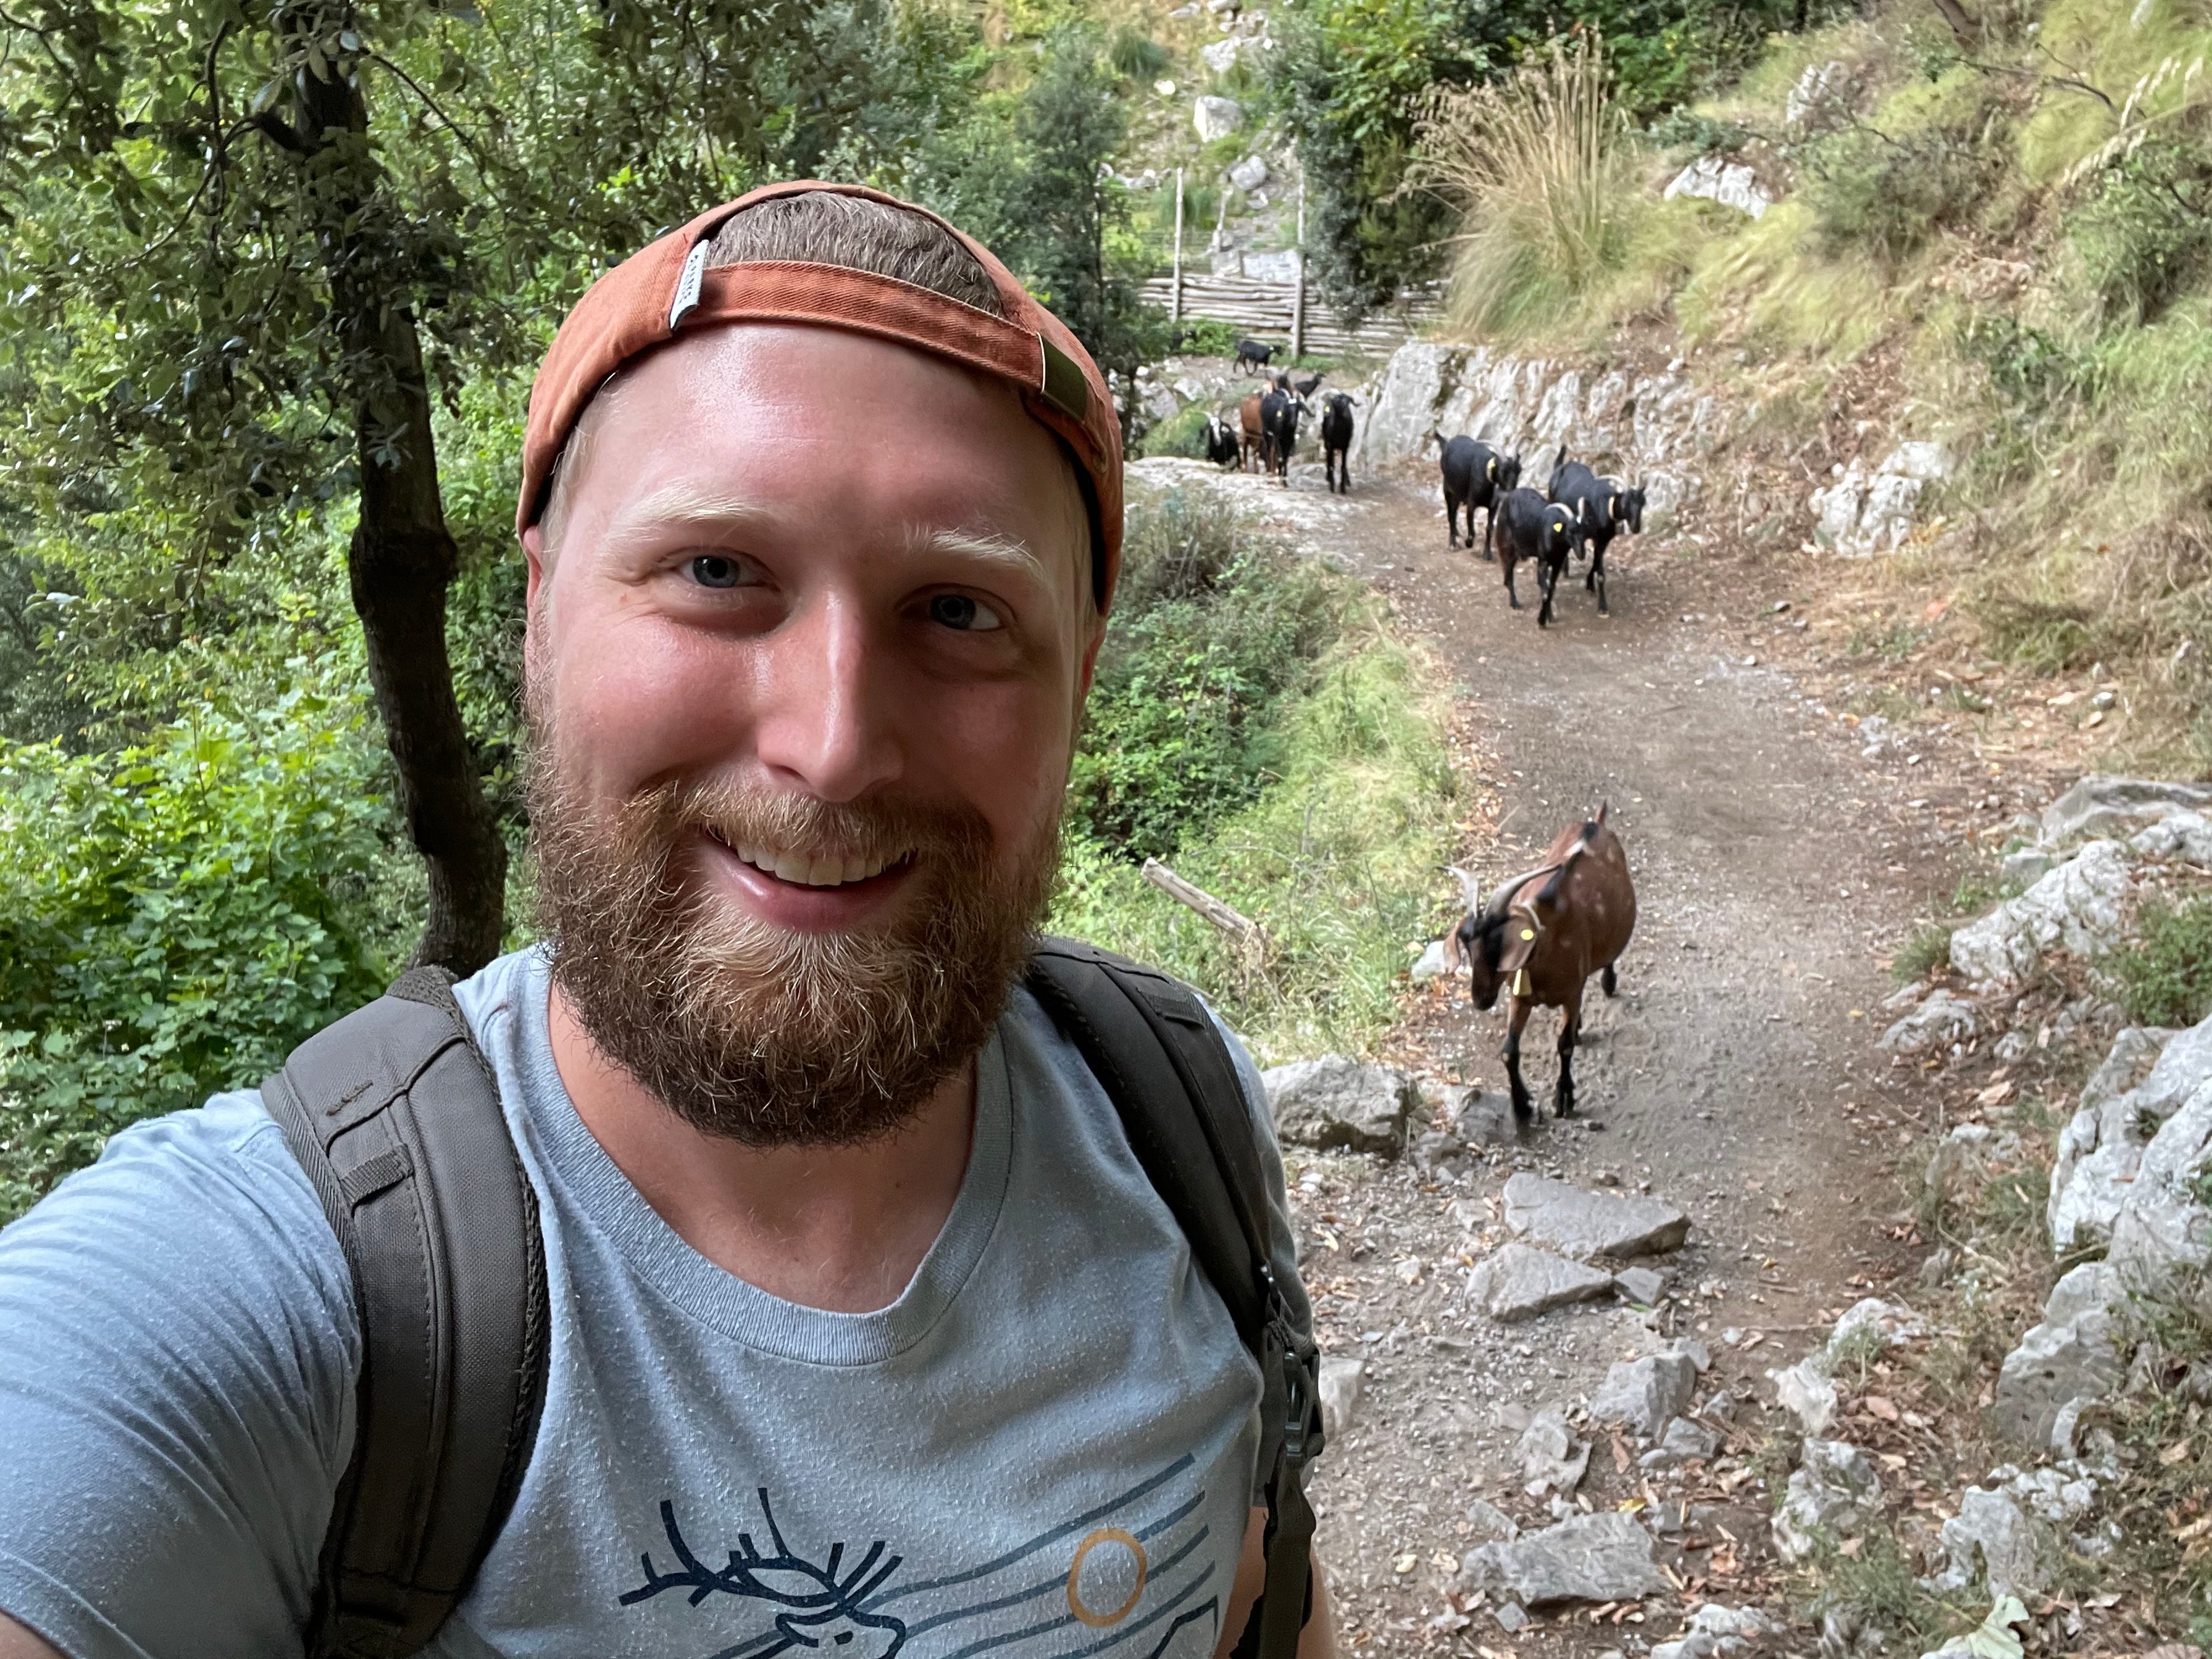 Timothy posiert für ein Selfie, während ihm Ziegen folgen.